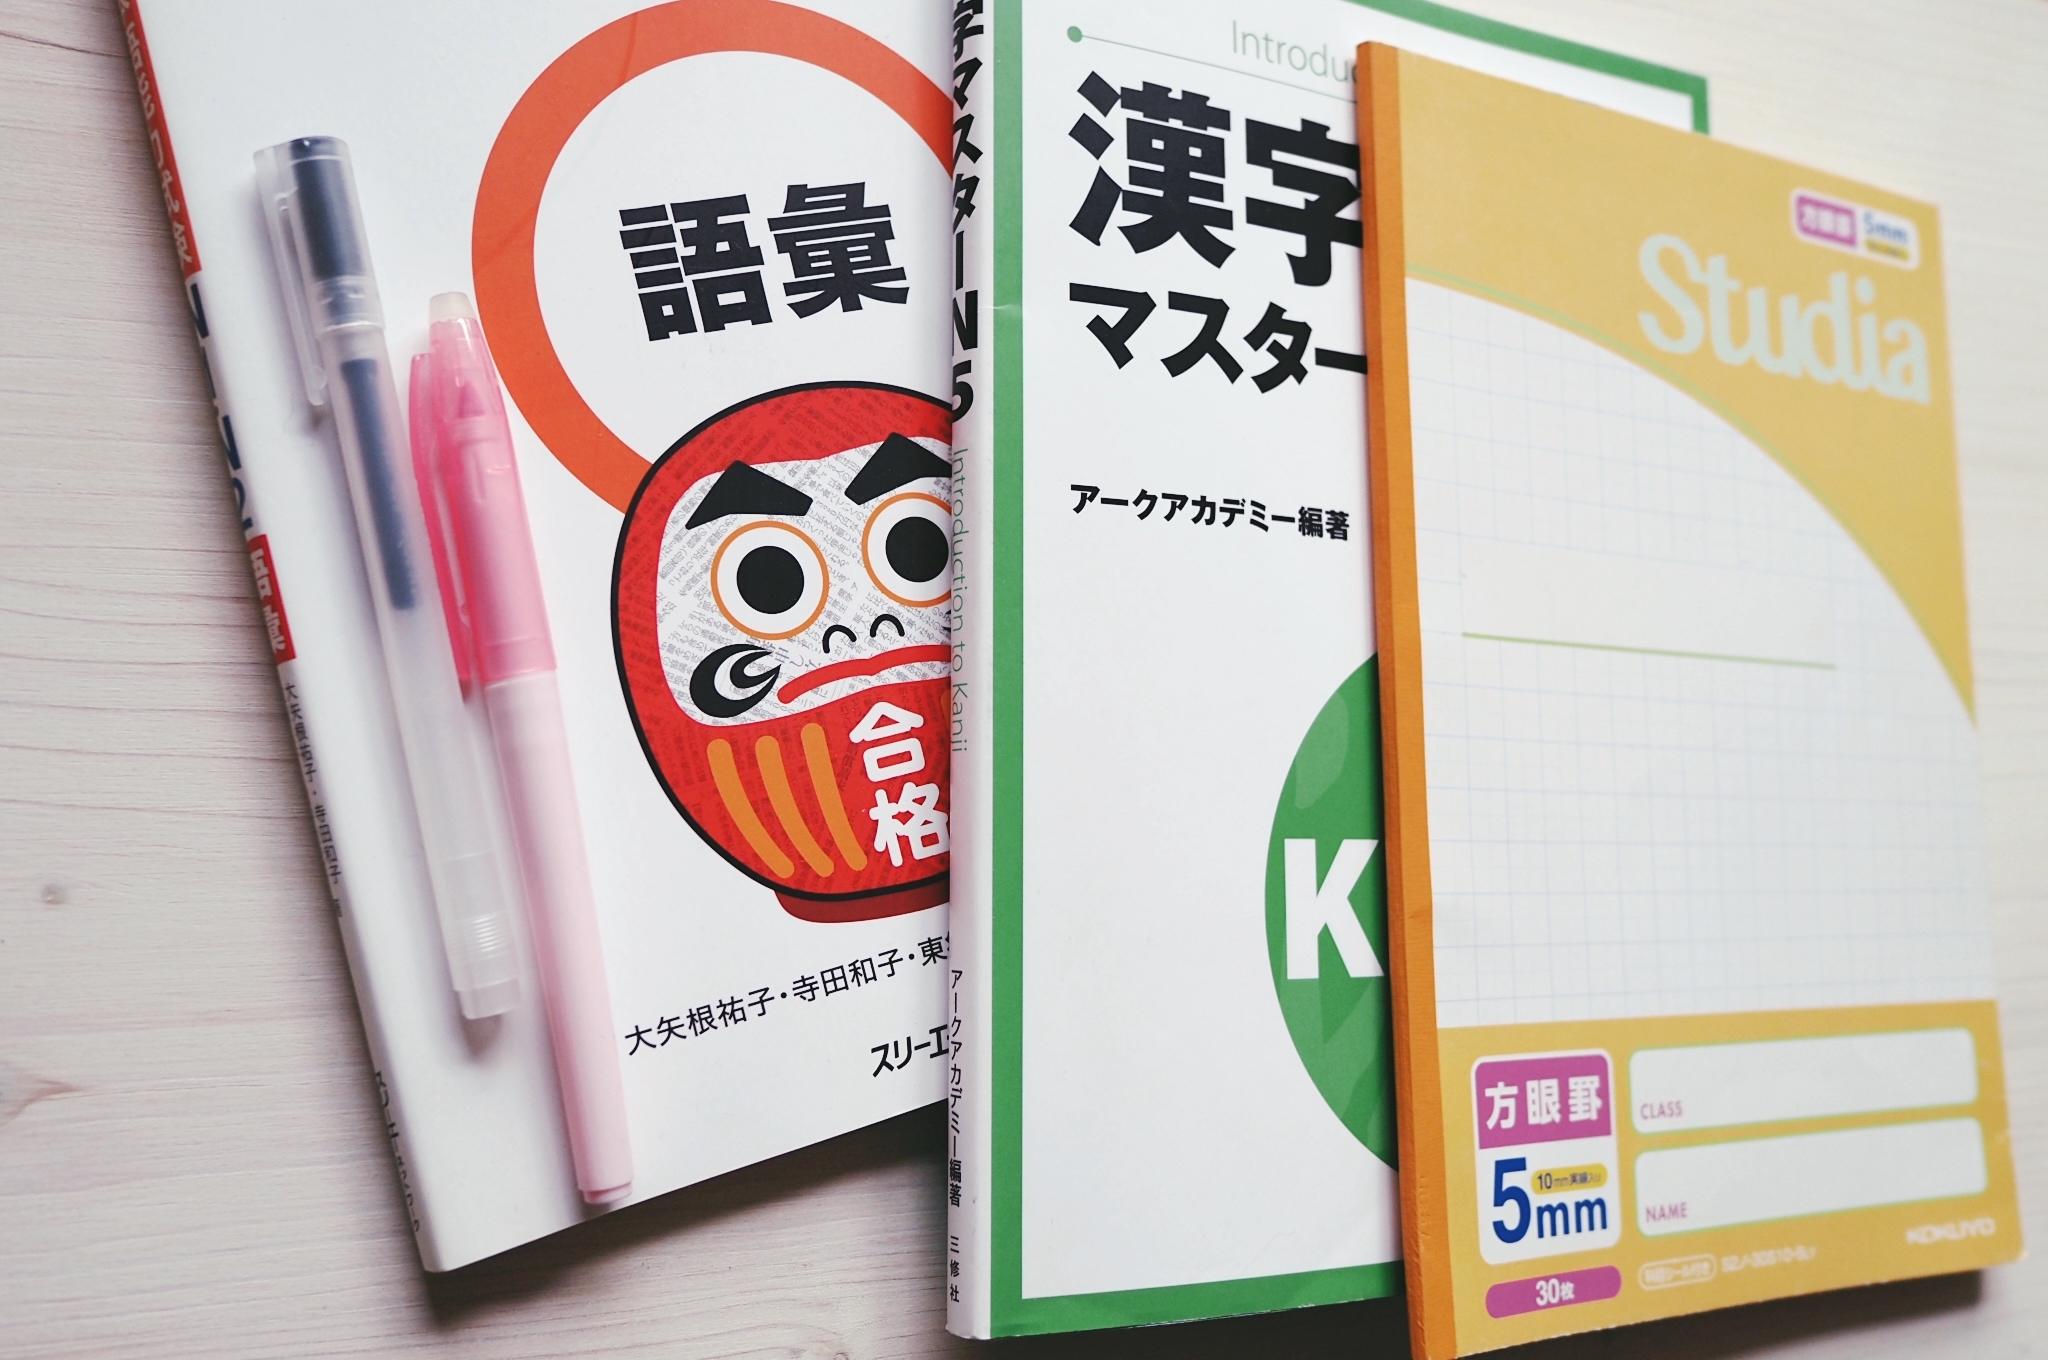 Studiare in Giappone: Come Scegliere una Scuola di Lingua Giapponese